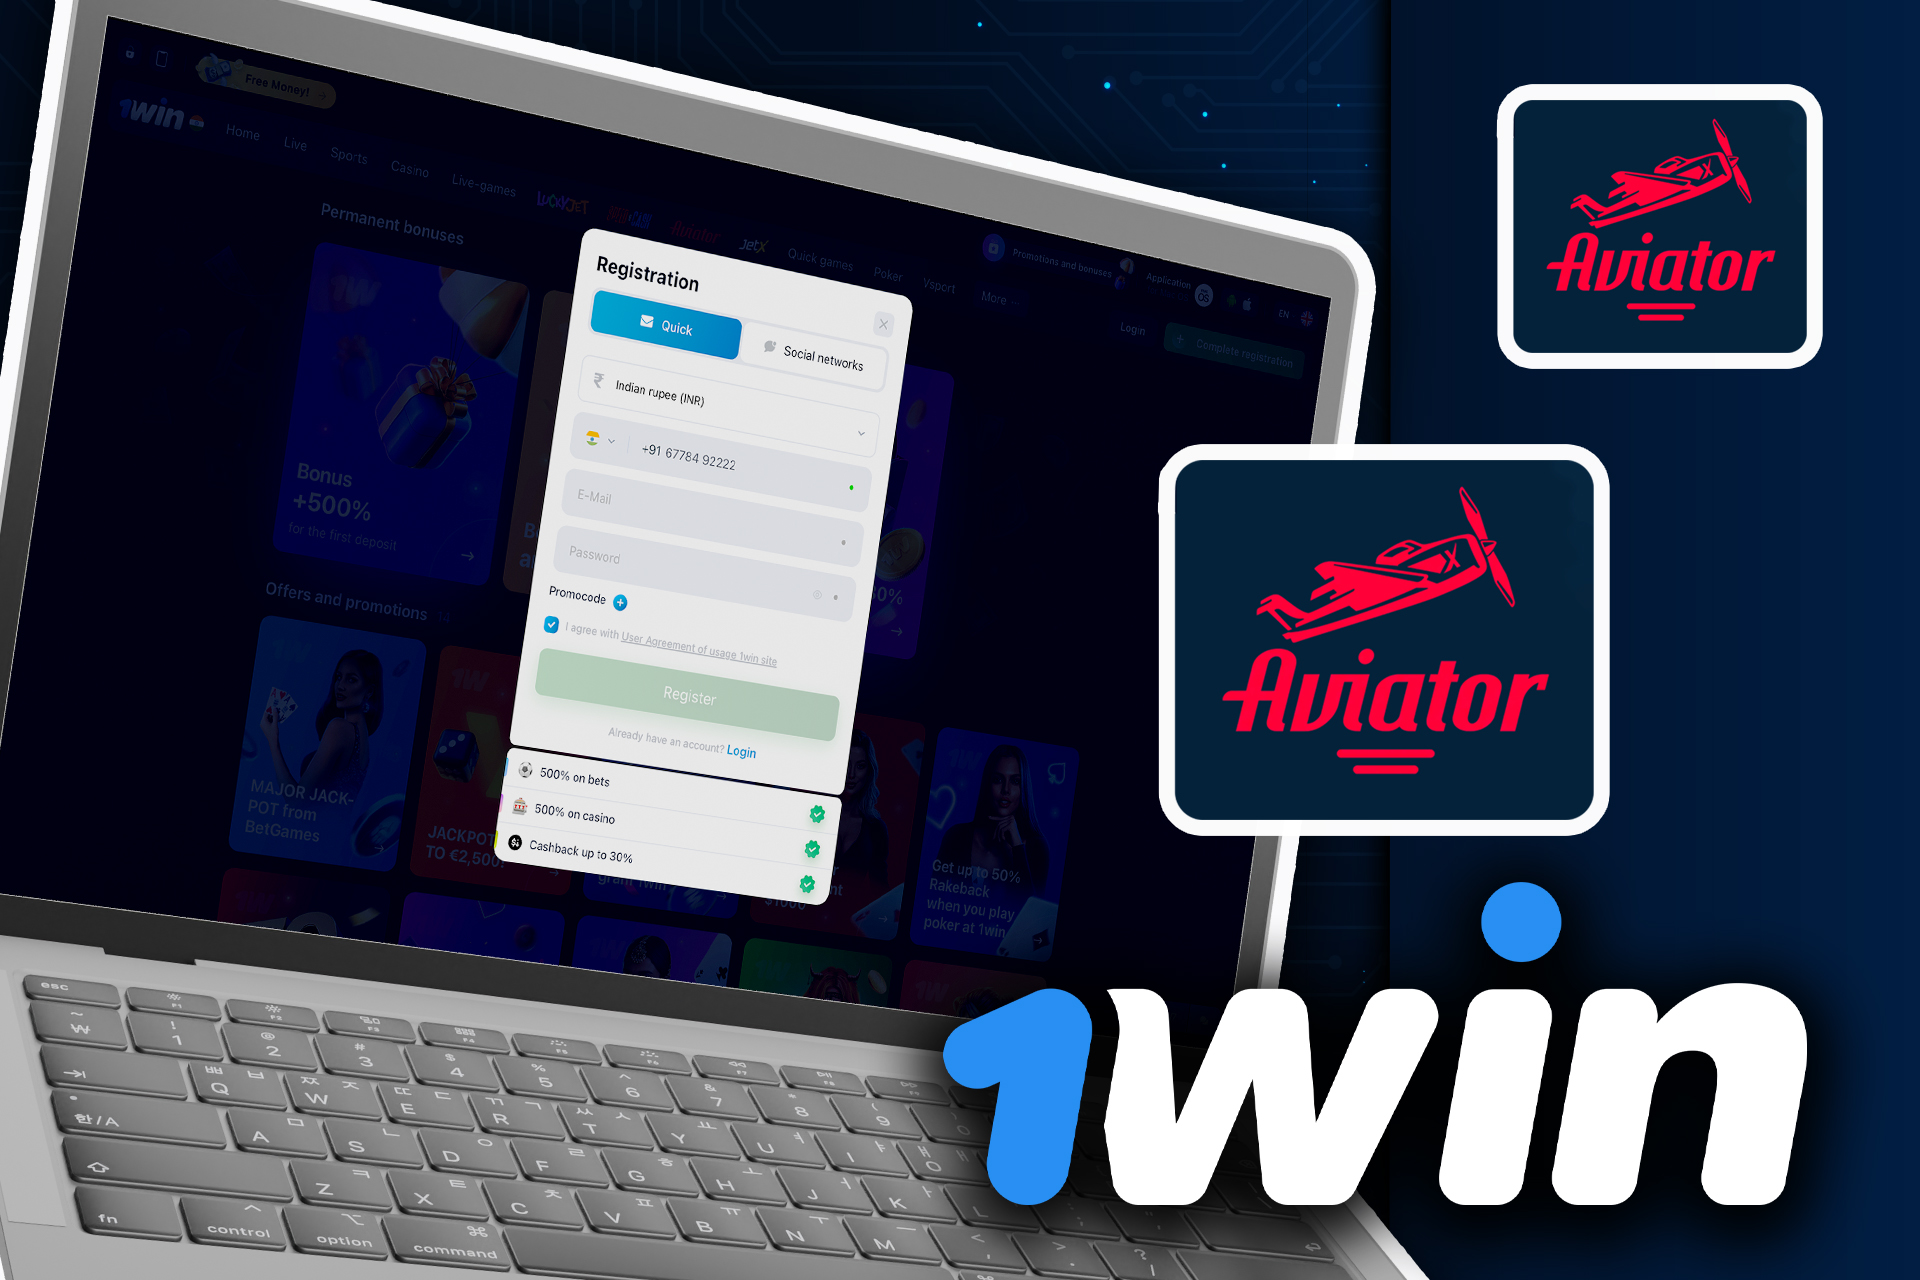 Abra el sitio web de 1win, conéctese a su cuenta, recárguela y busque el juego Aviator para empezar a jugar.